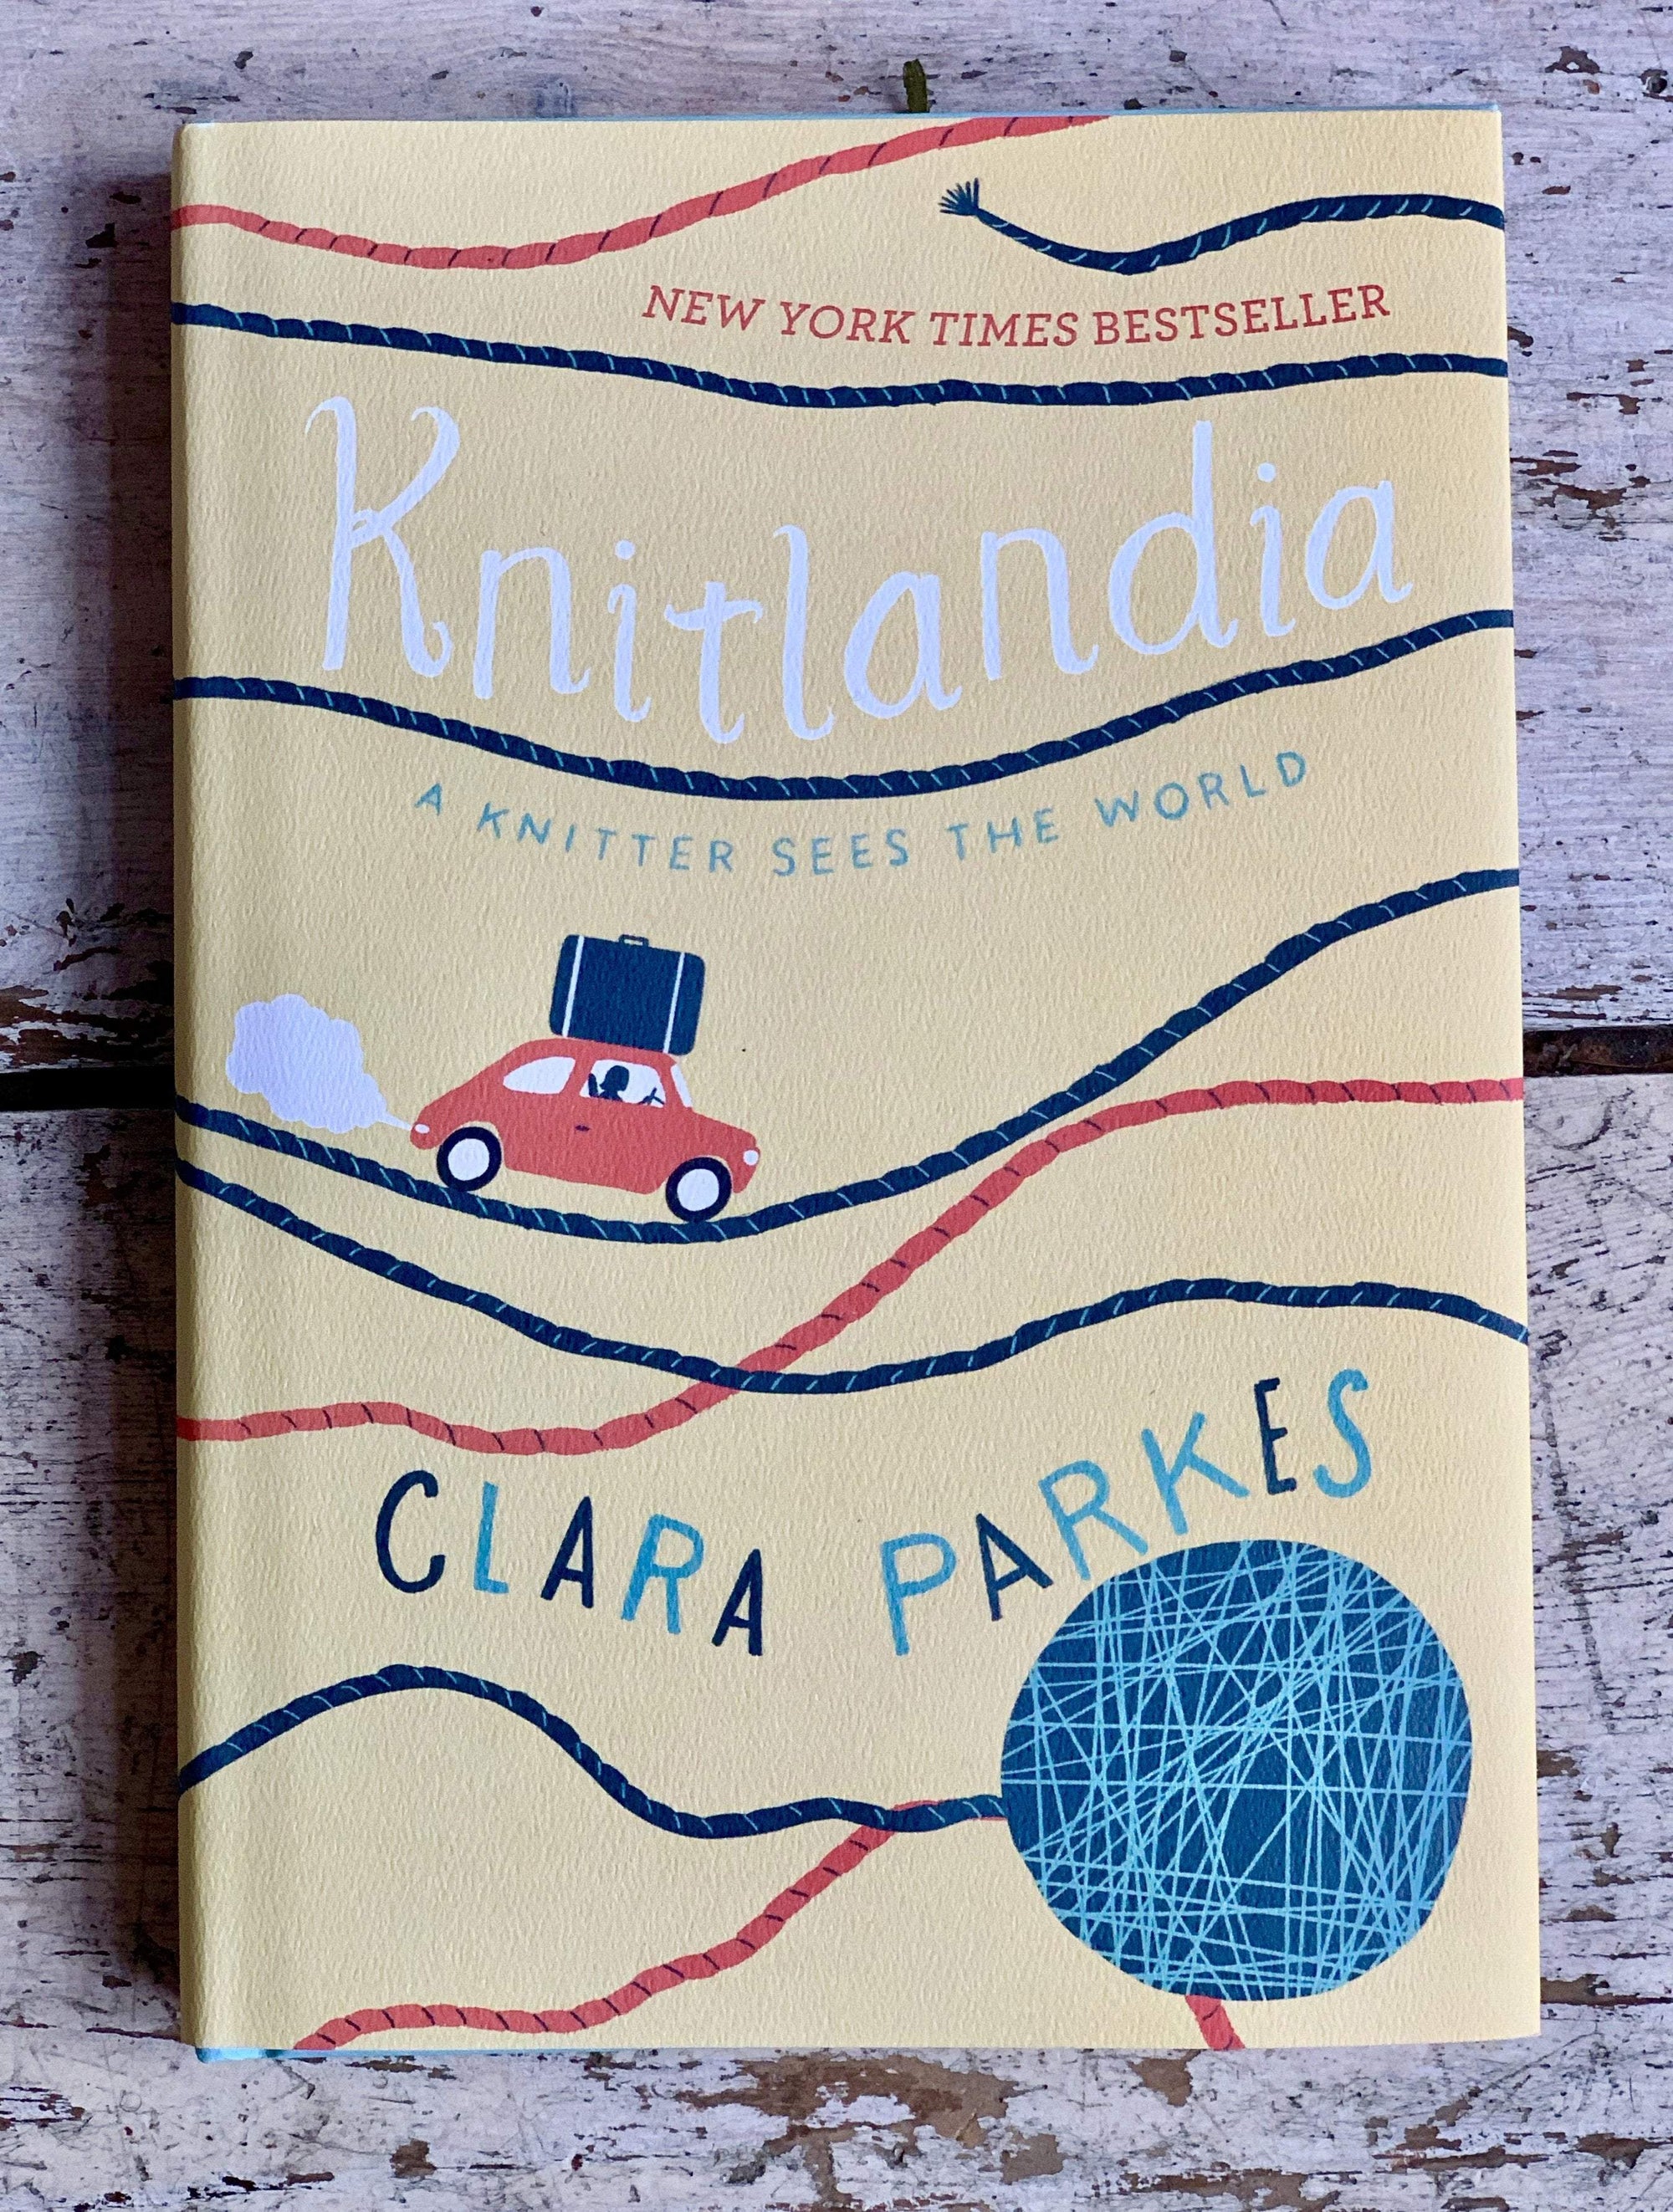 Knitlandia by Clara Parkes Abrams Press